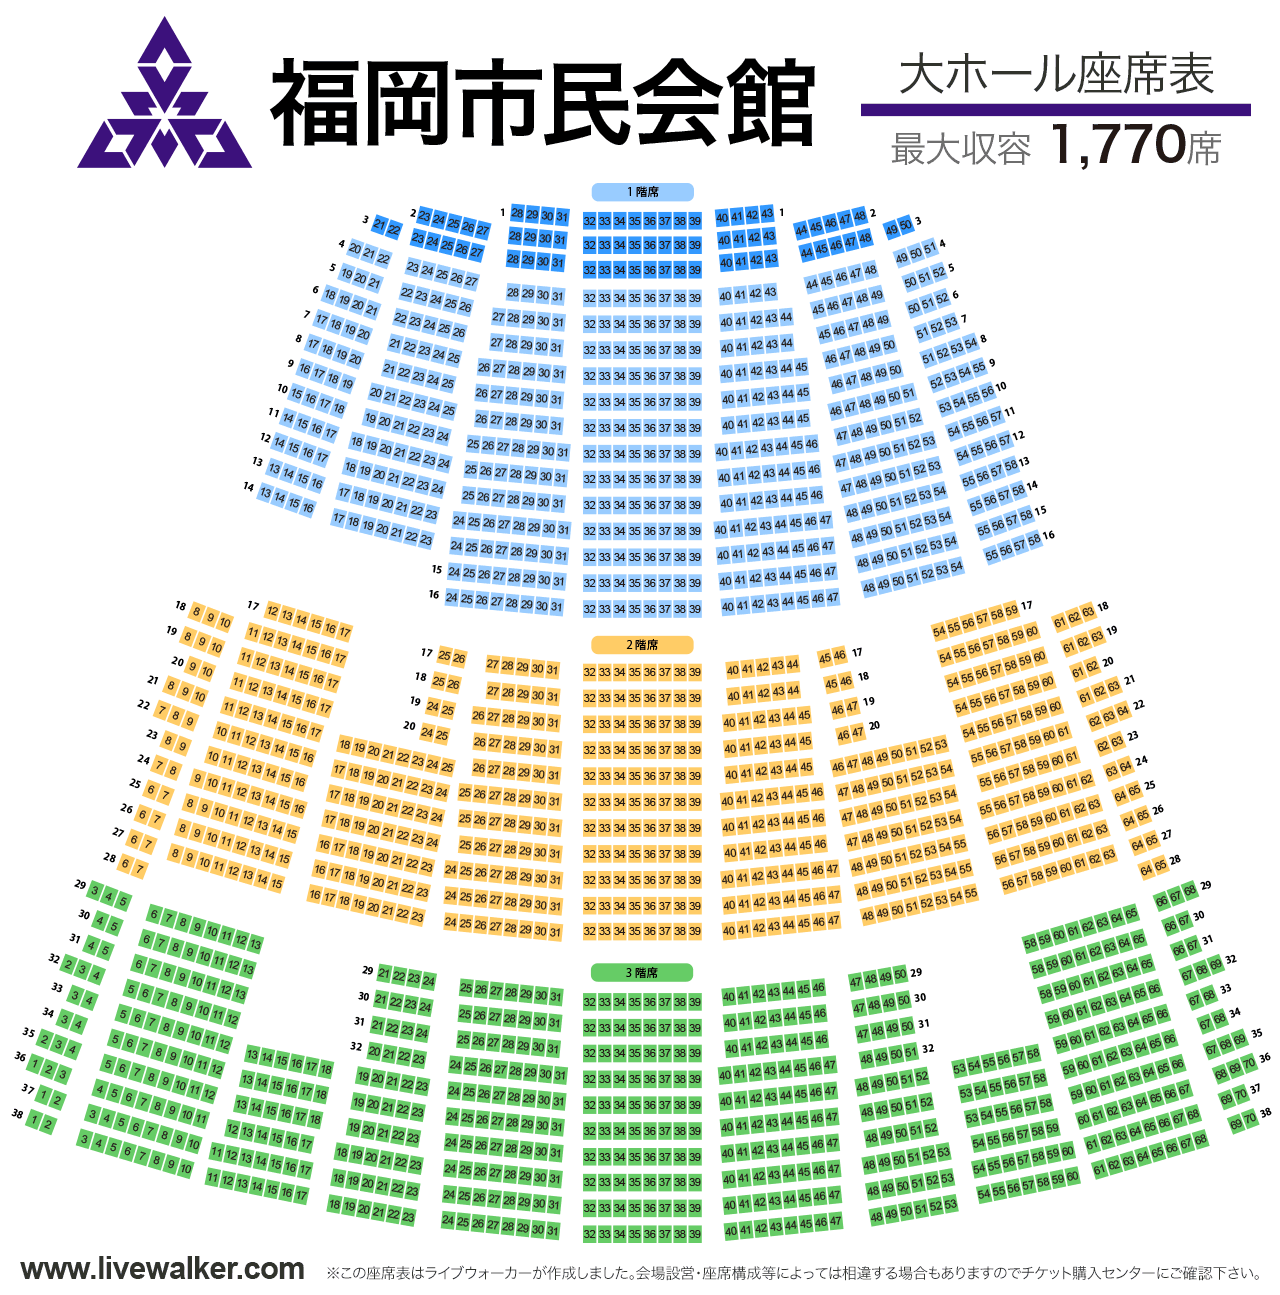 福岡市民会館大ホールの座席表